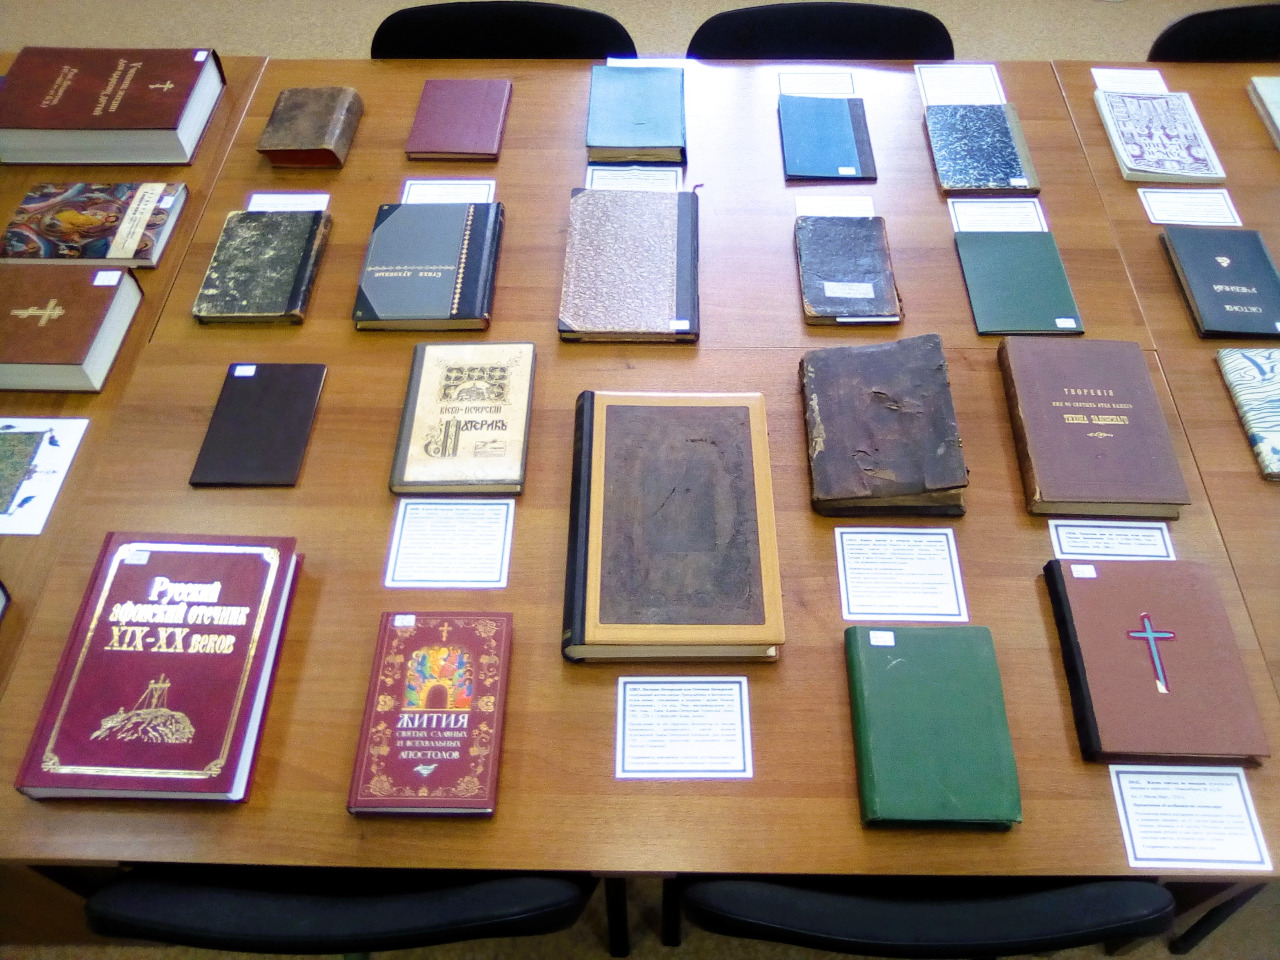  В честь Дня православной книги в библиотеке Семинарии проходит выставка старопечатных и редких книг